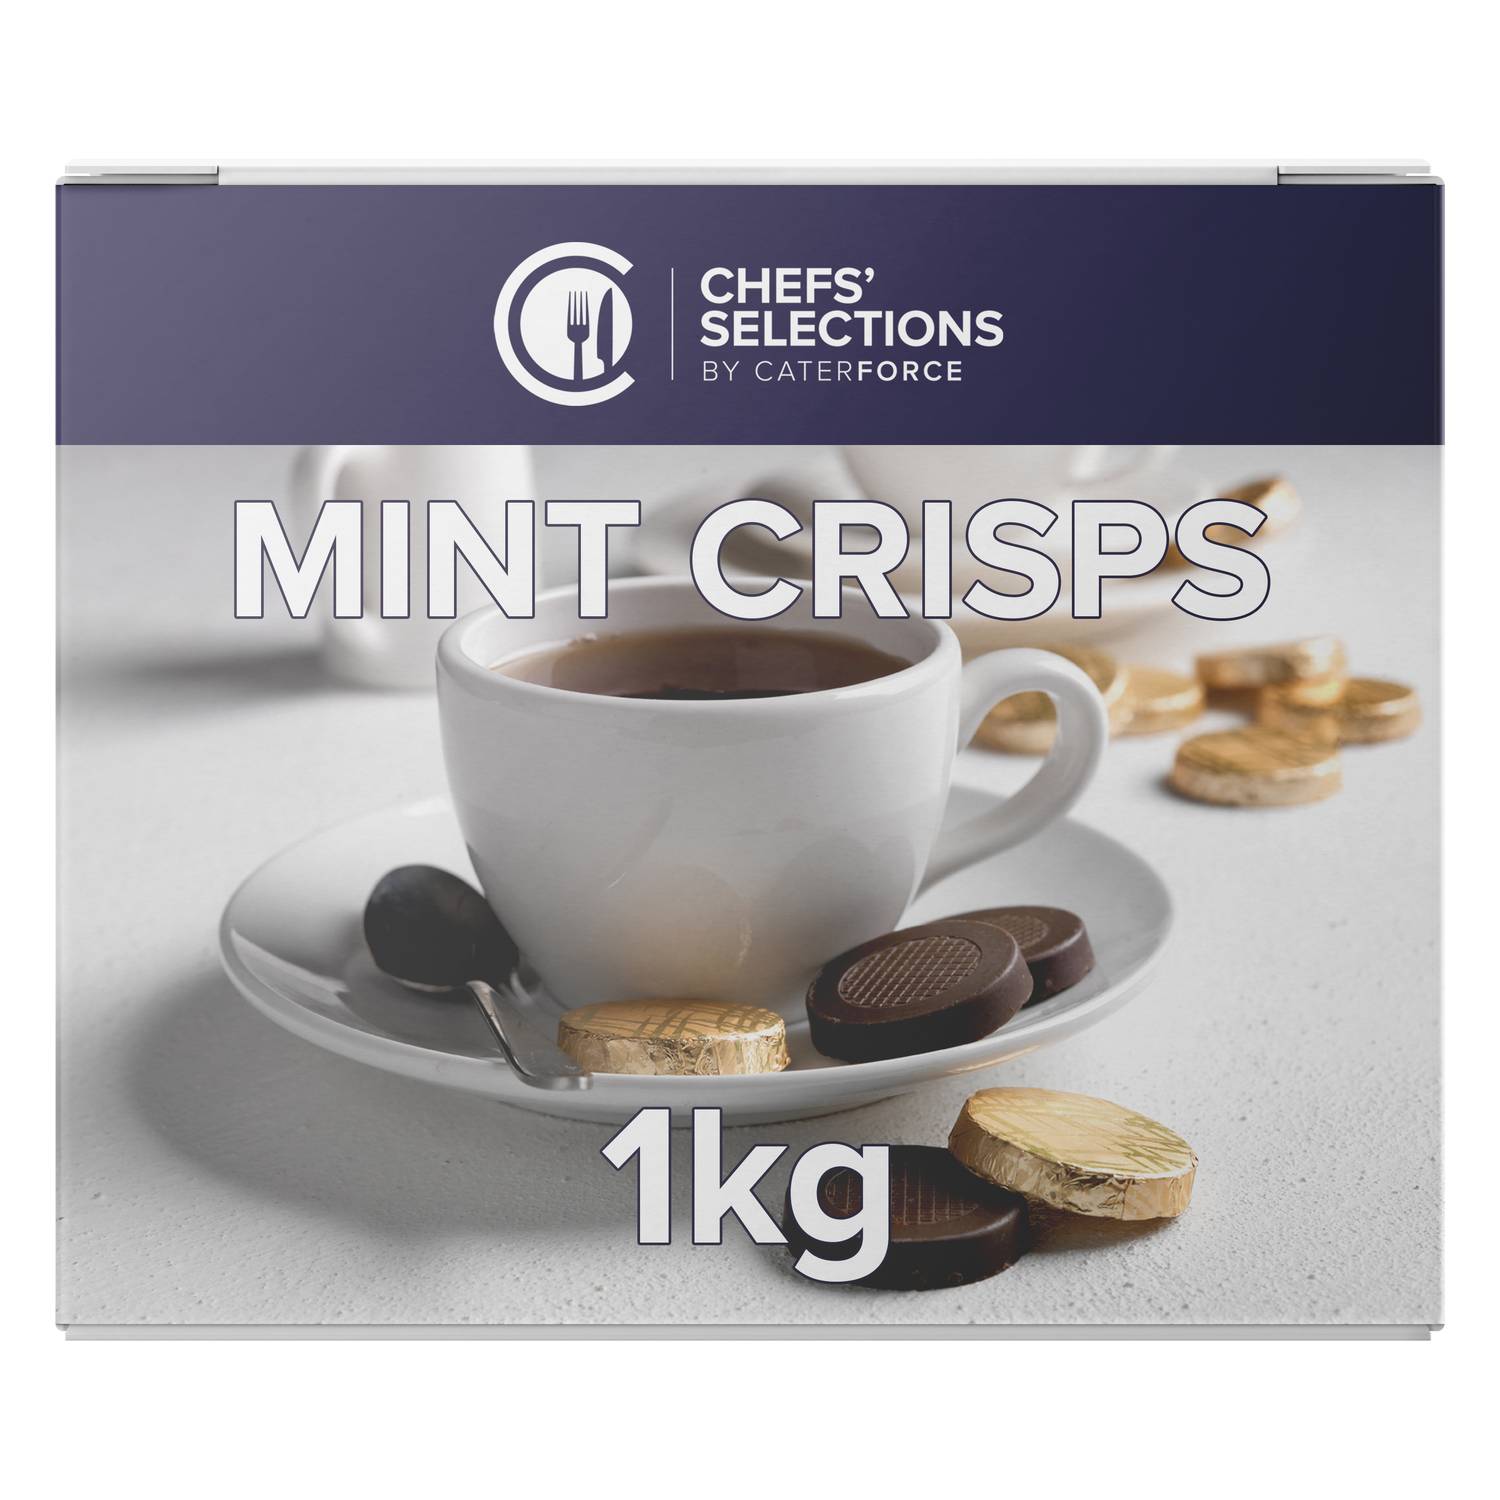 Chefs’ Selections Mint Crisps (6 x 1kg)